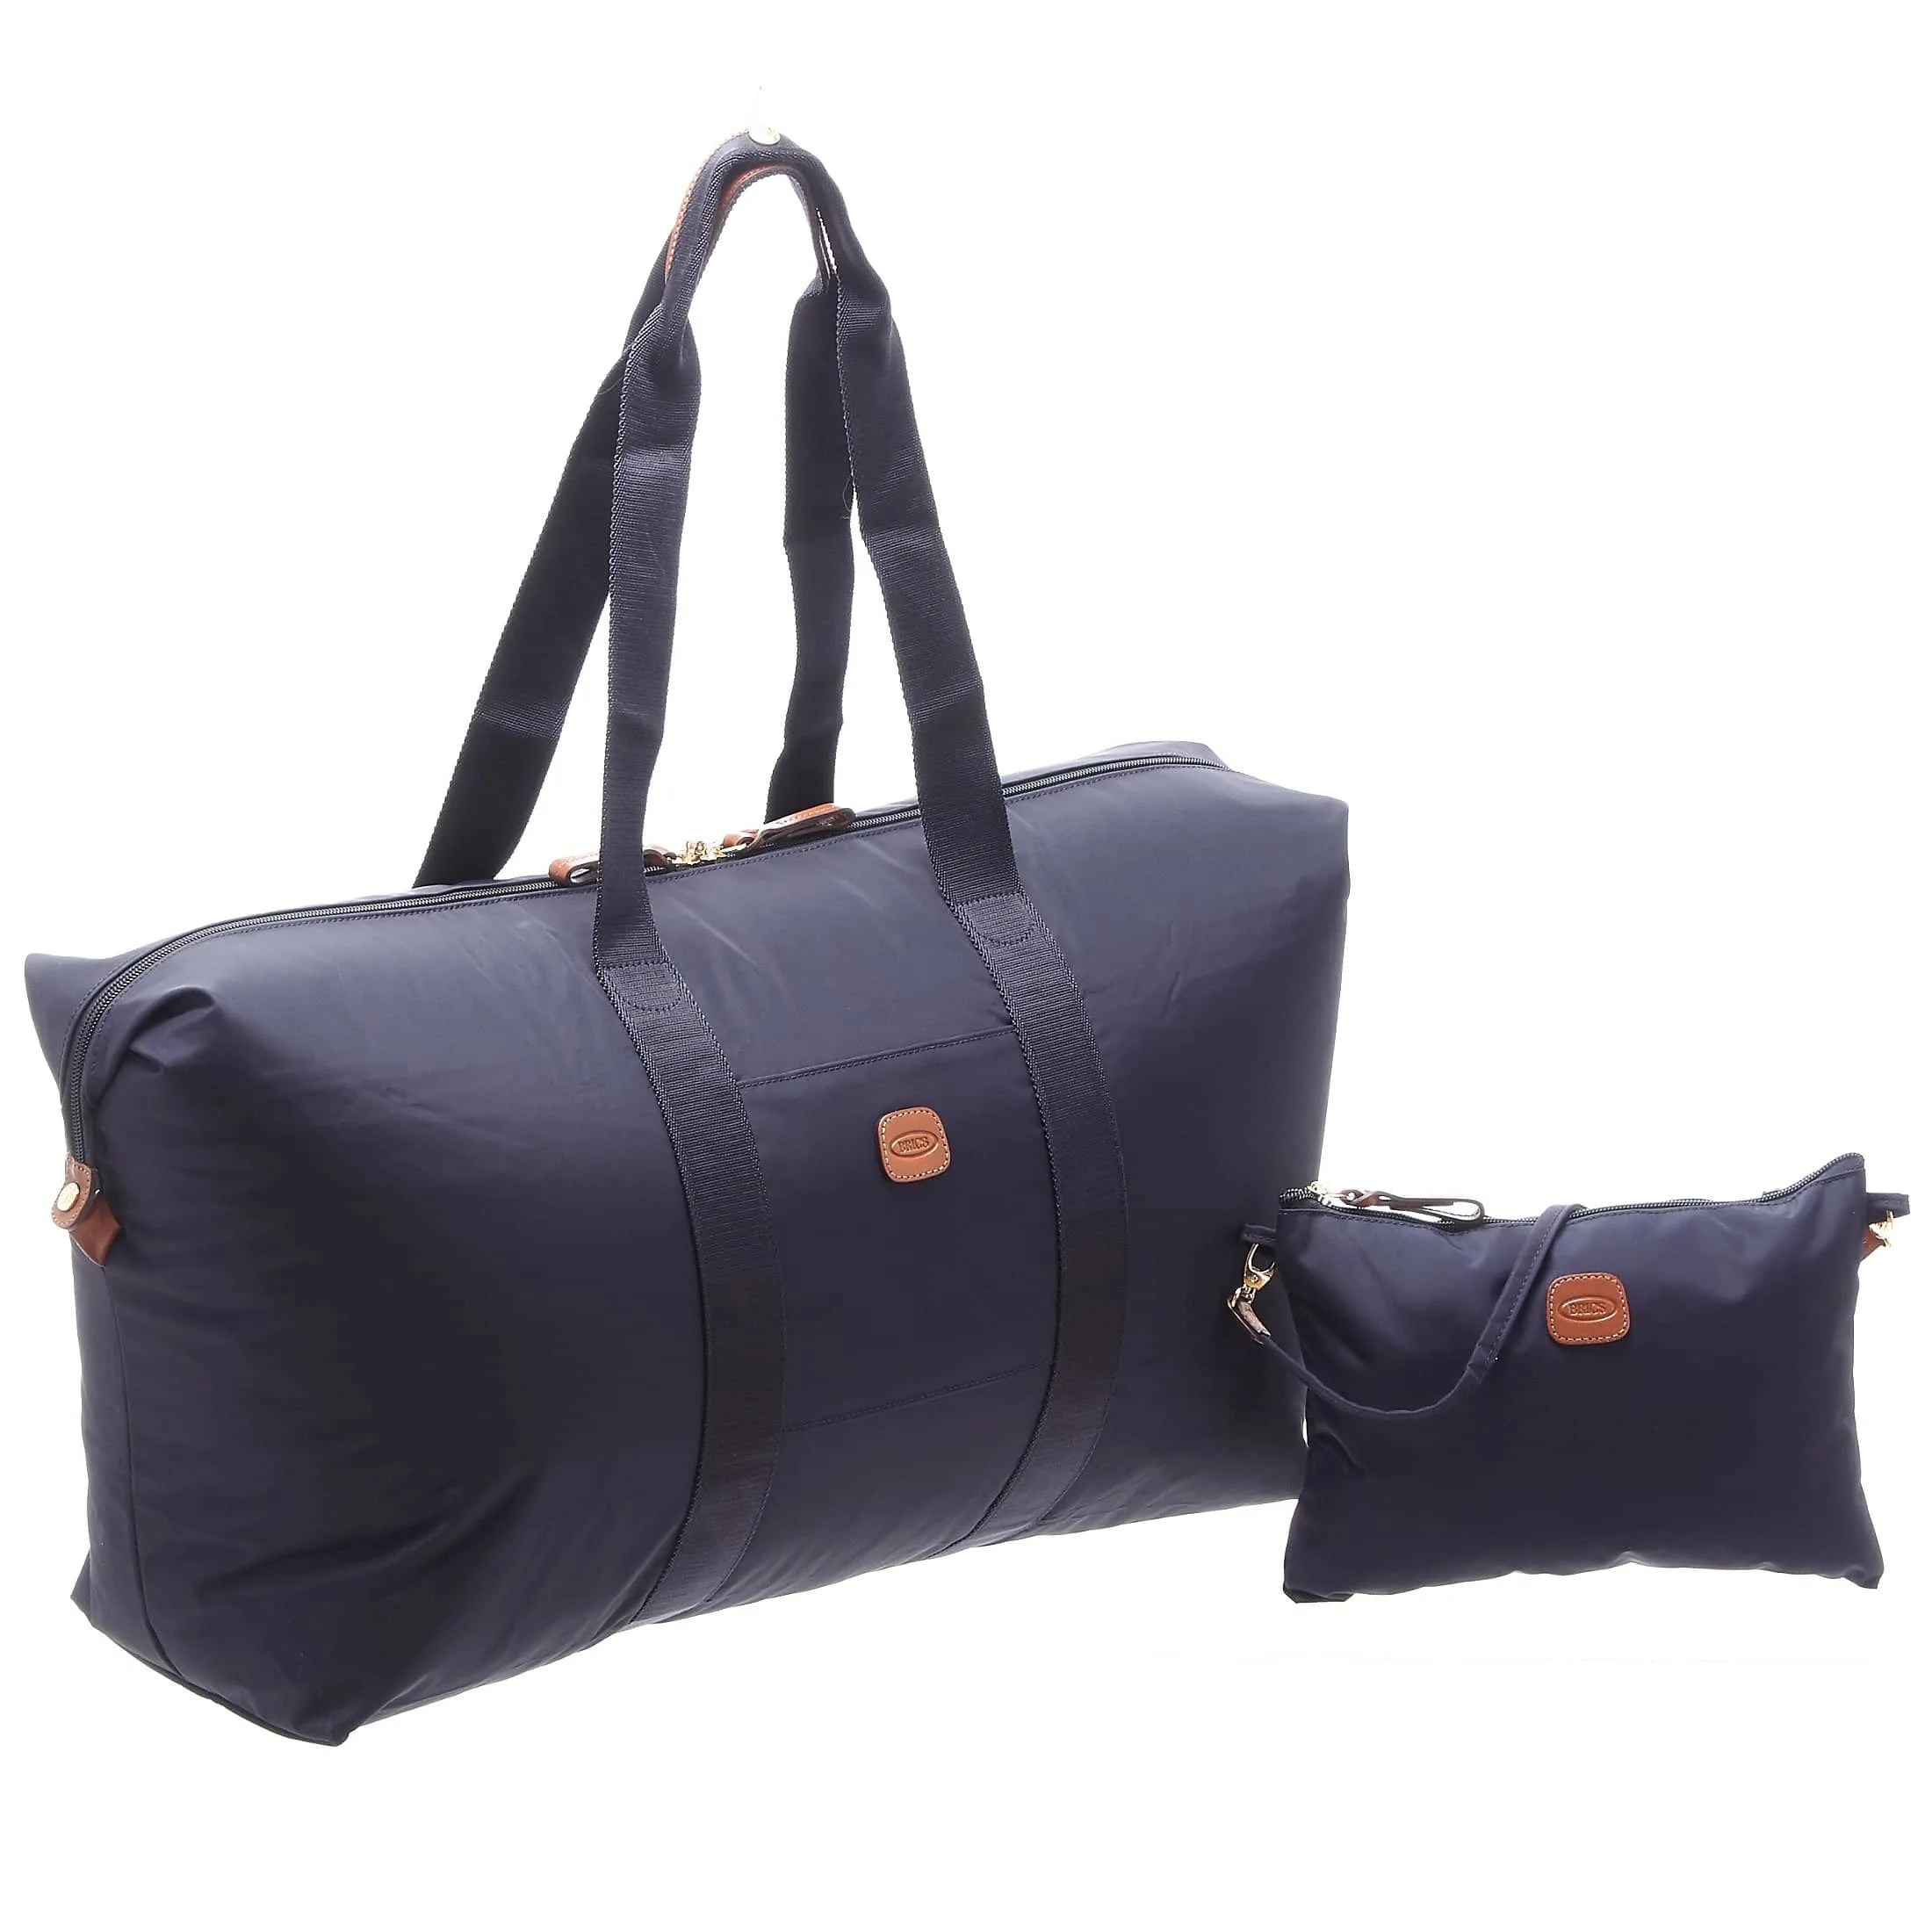 Brics X-Bag travel bag 55 cm - black